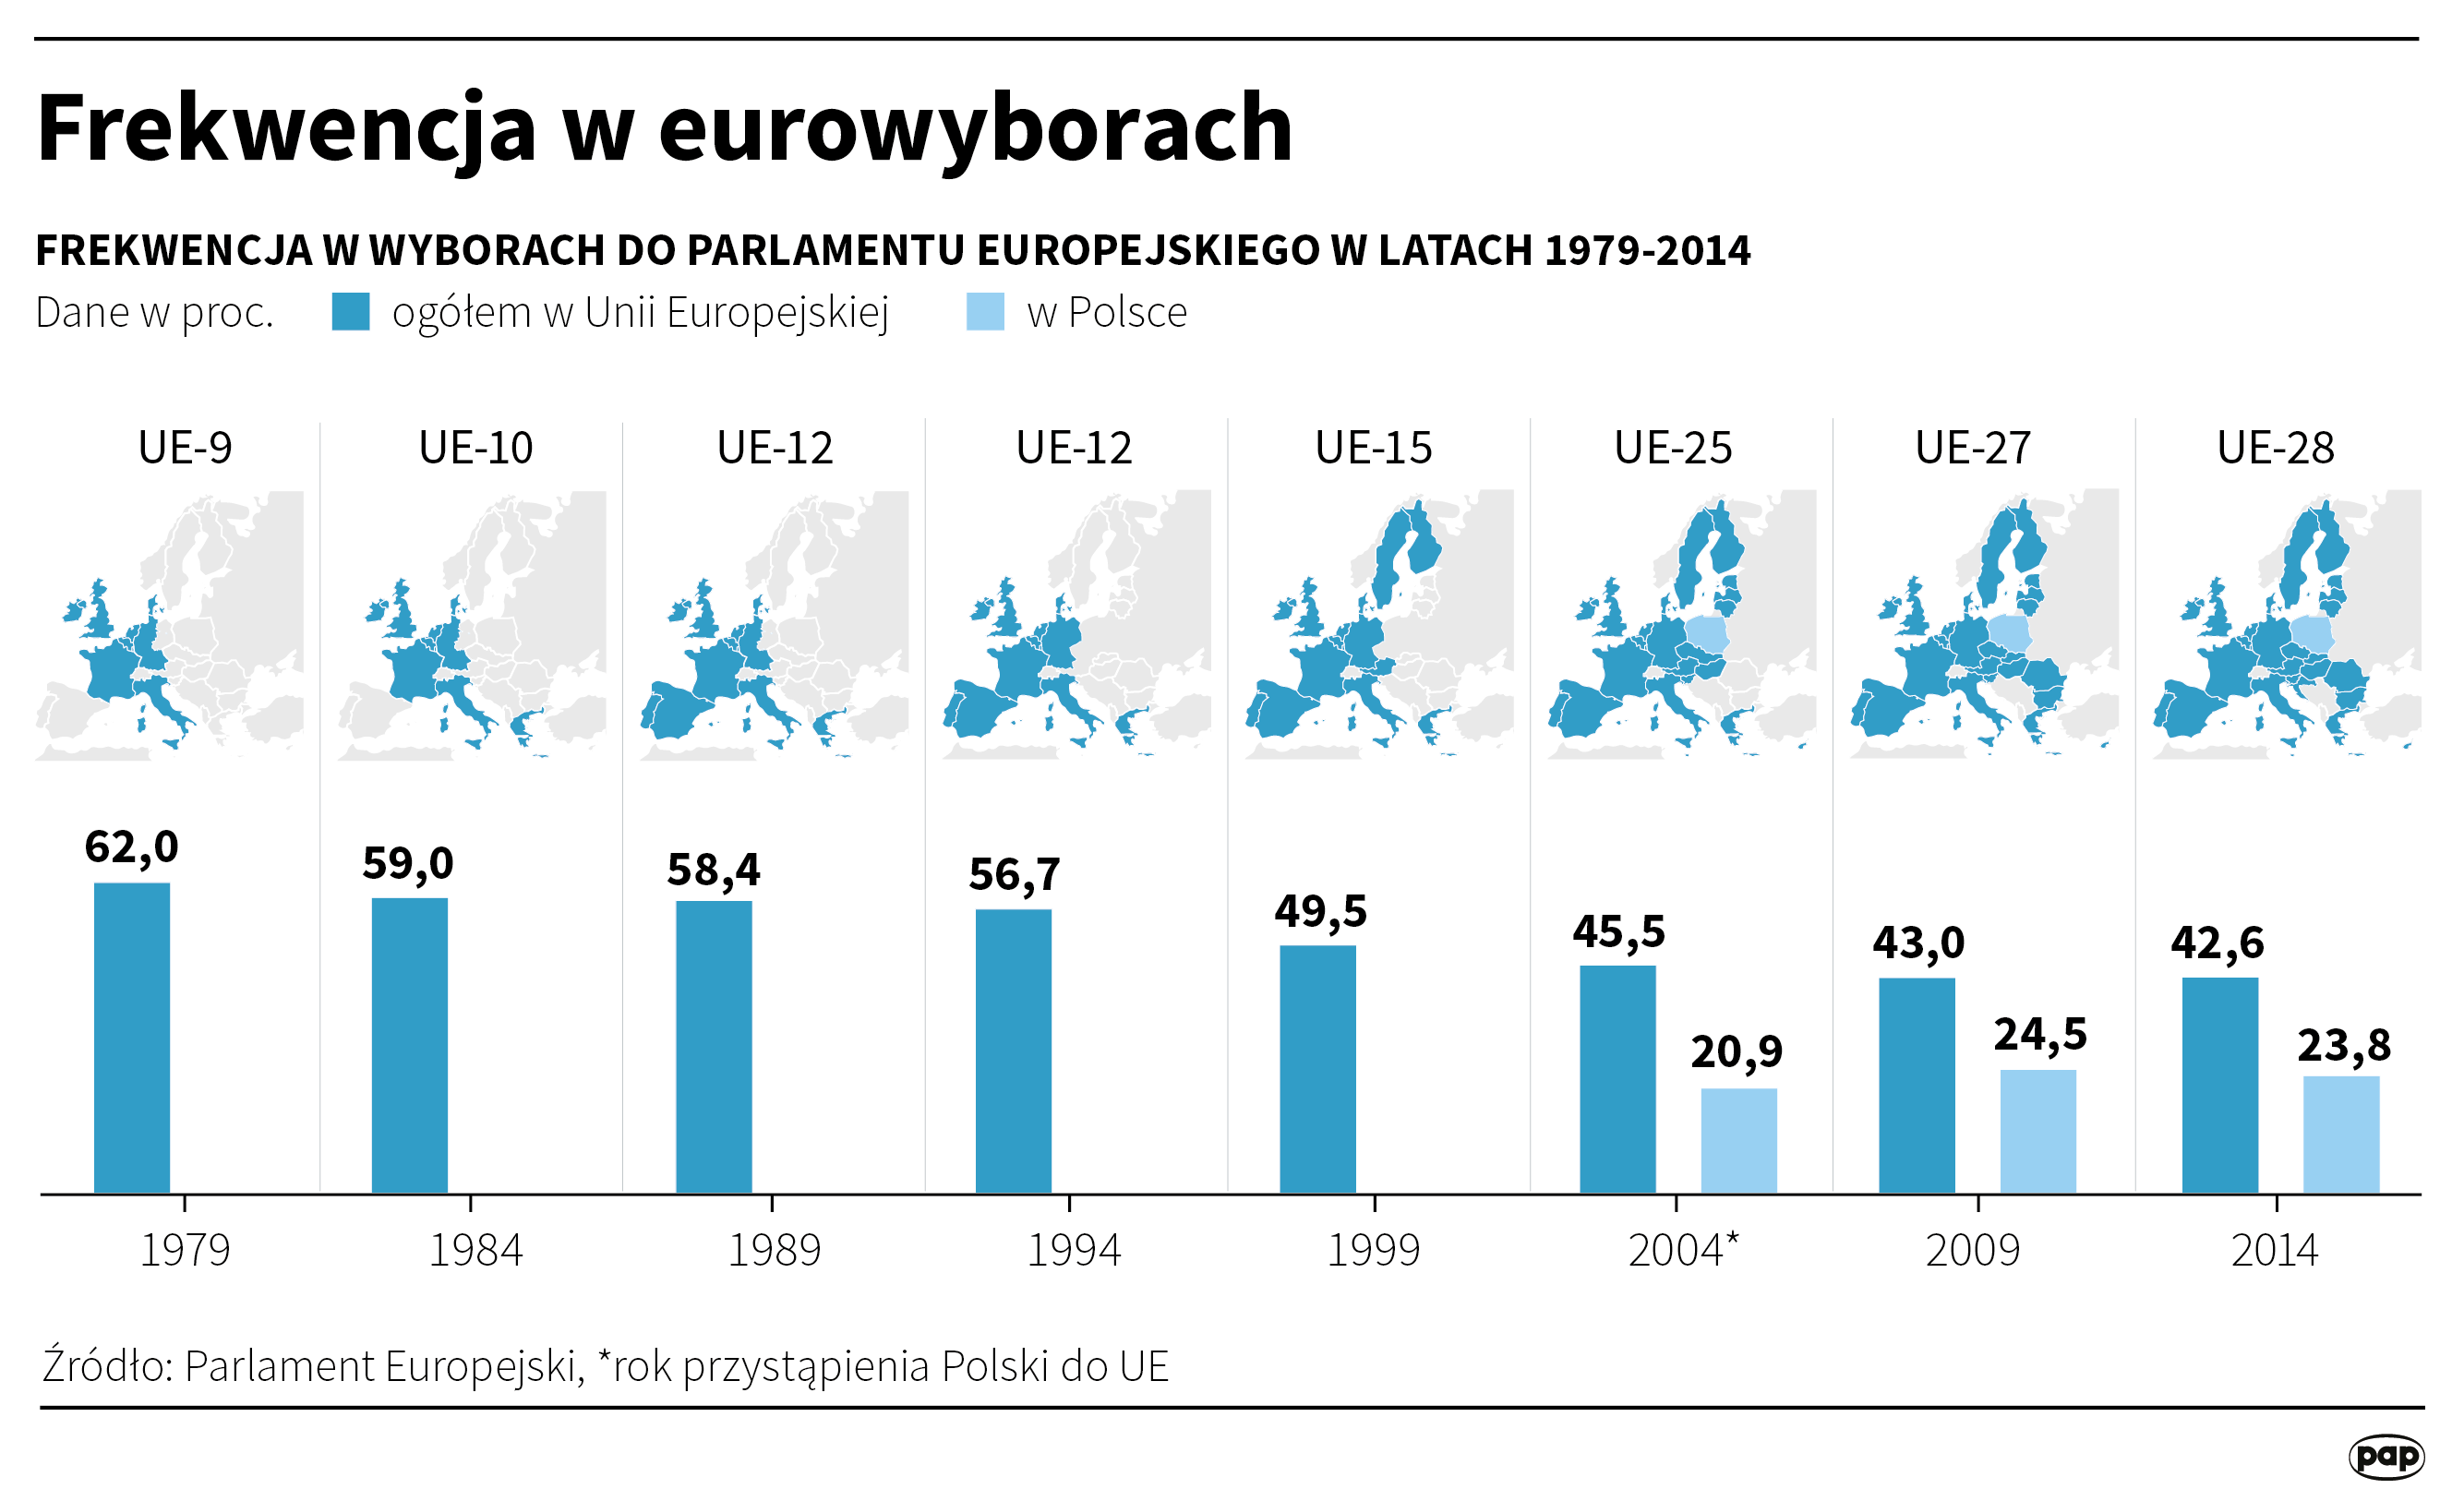 Frekwencja w eurowyborach